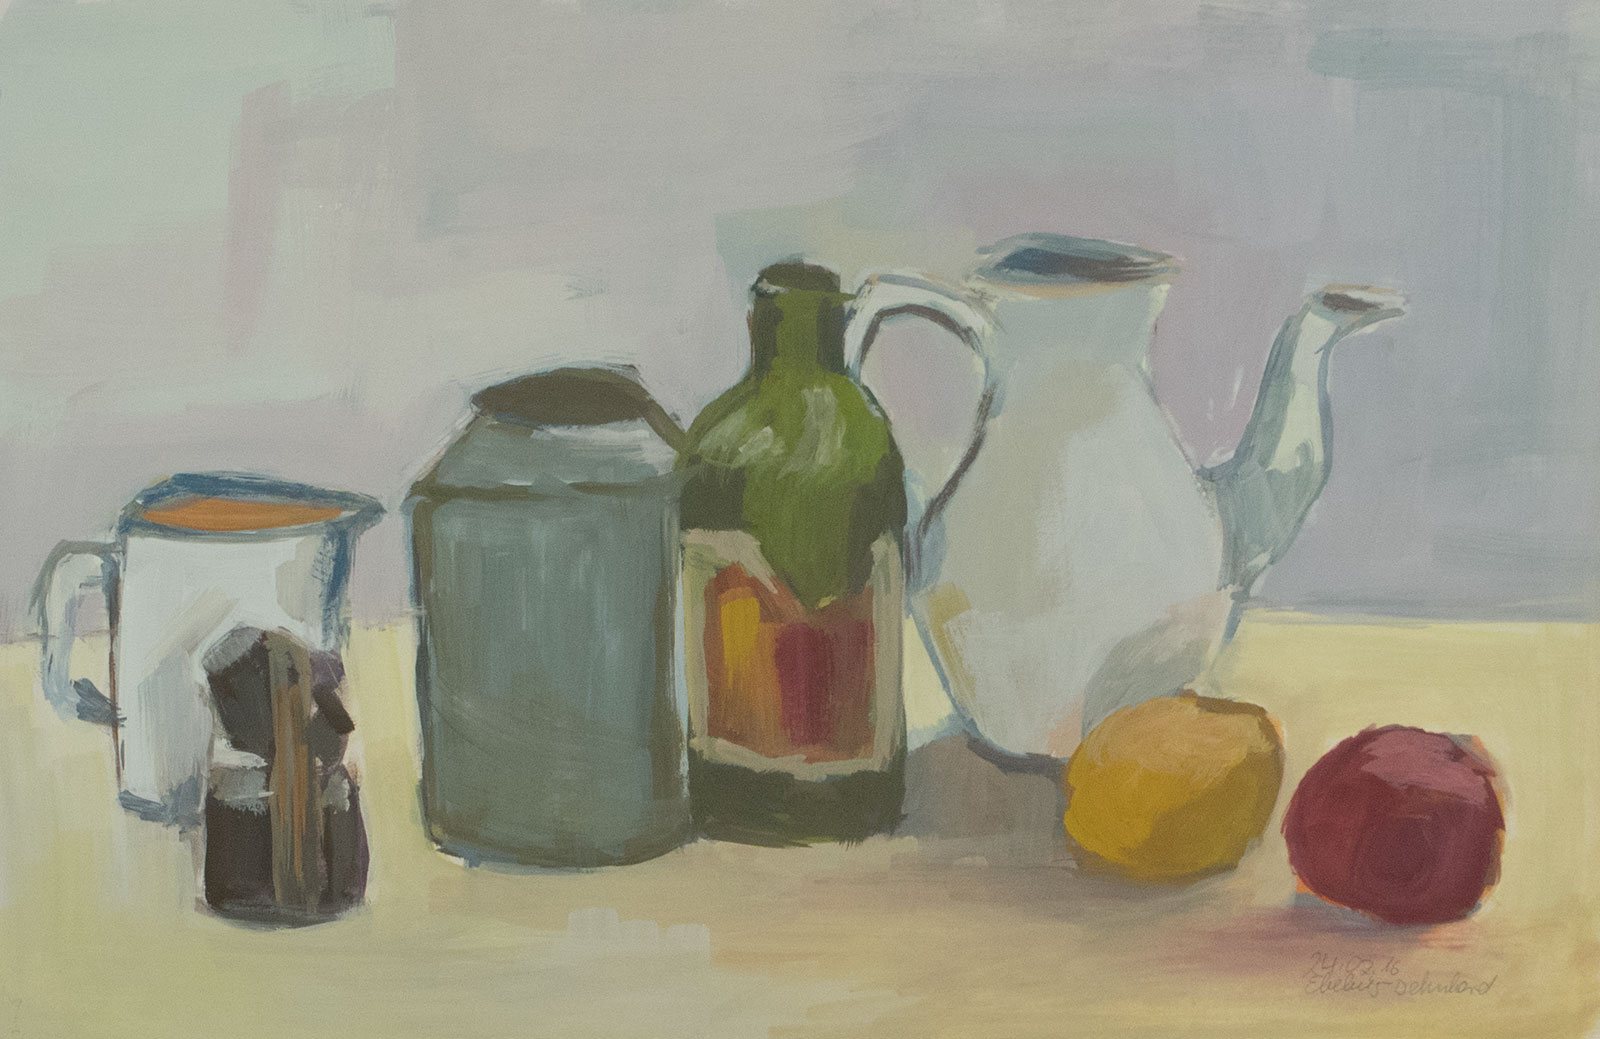 Kanne, Flasche, Krug und Obst dargestellt auf einem Tisch